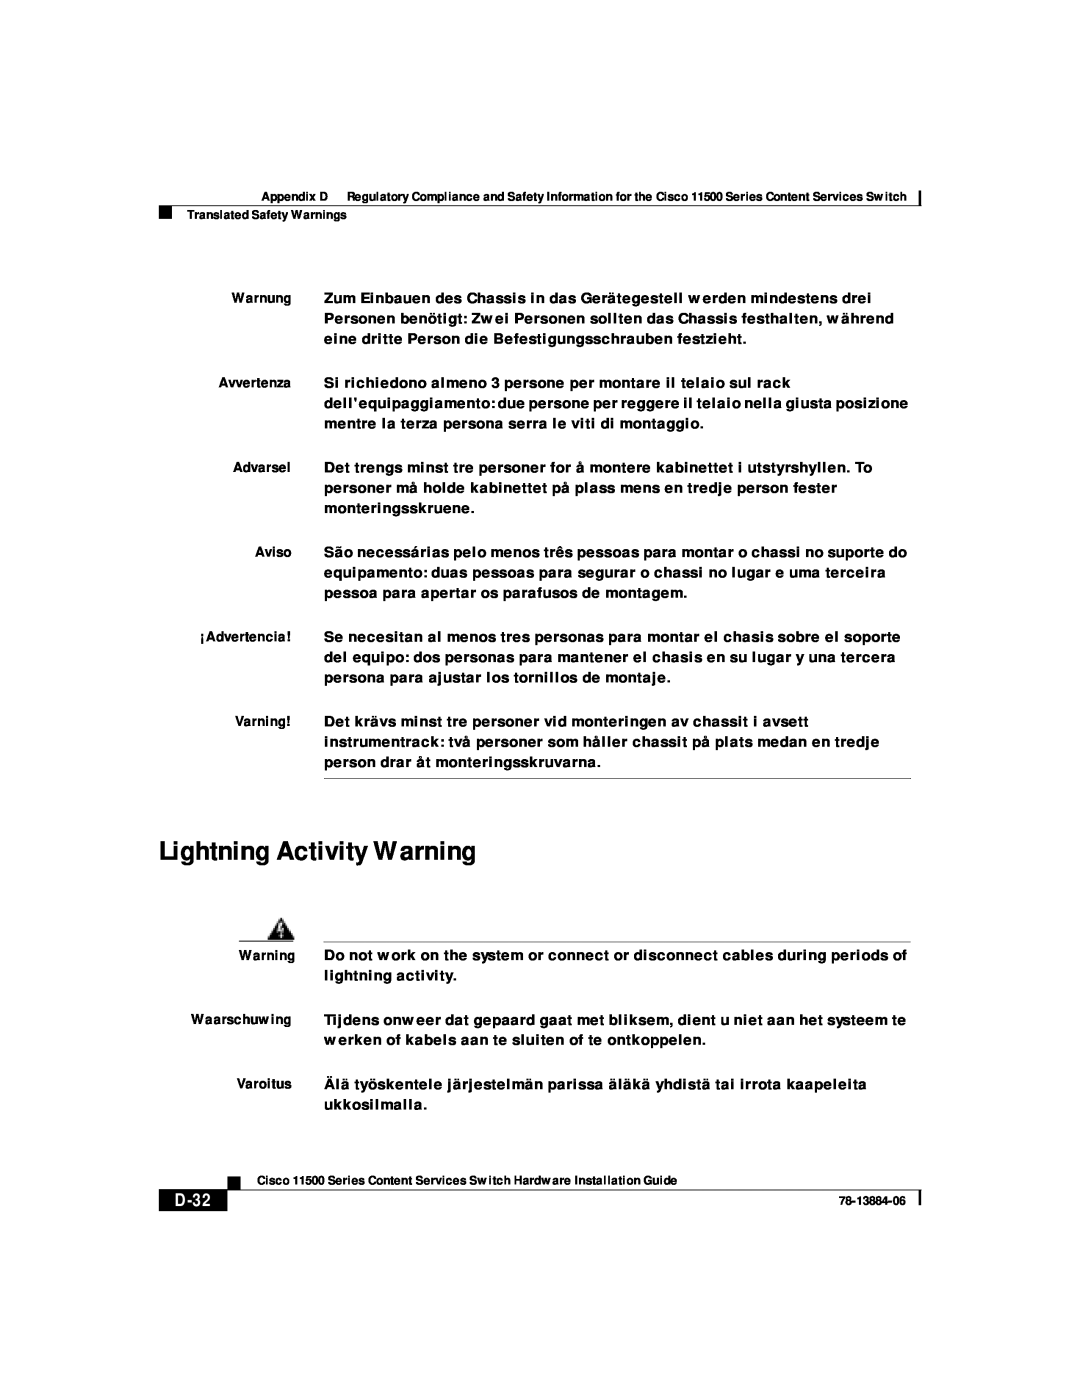 Cisco Systems 11500 Series manual Lightning Activity Warning, D-32 